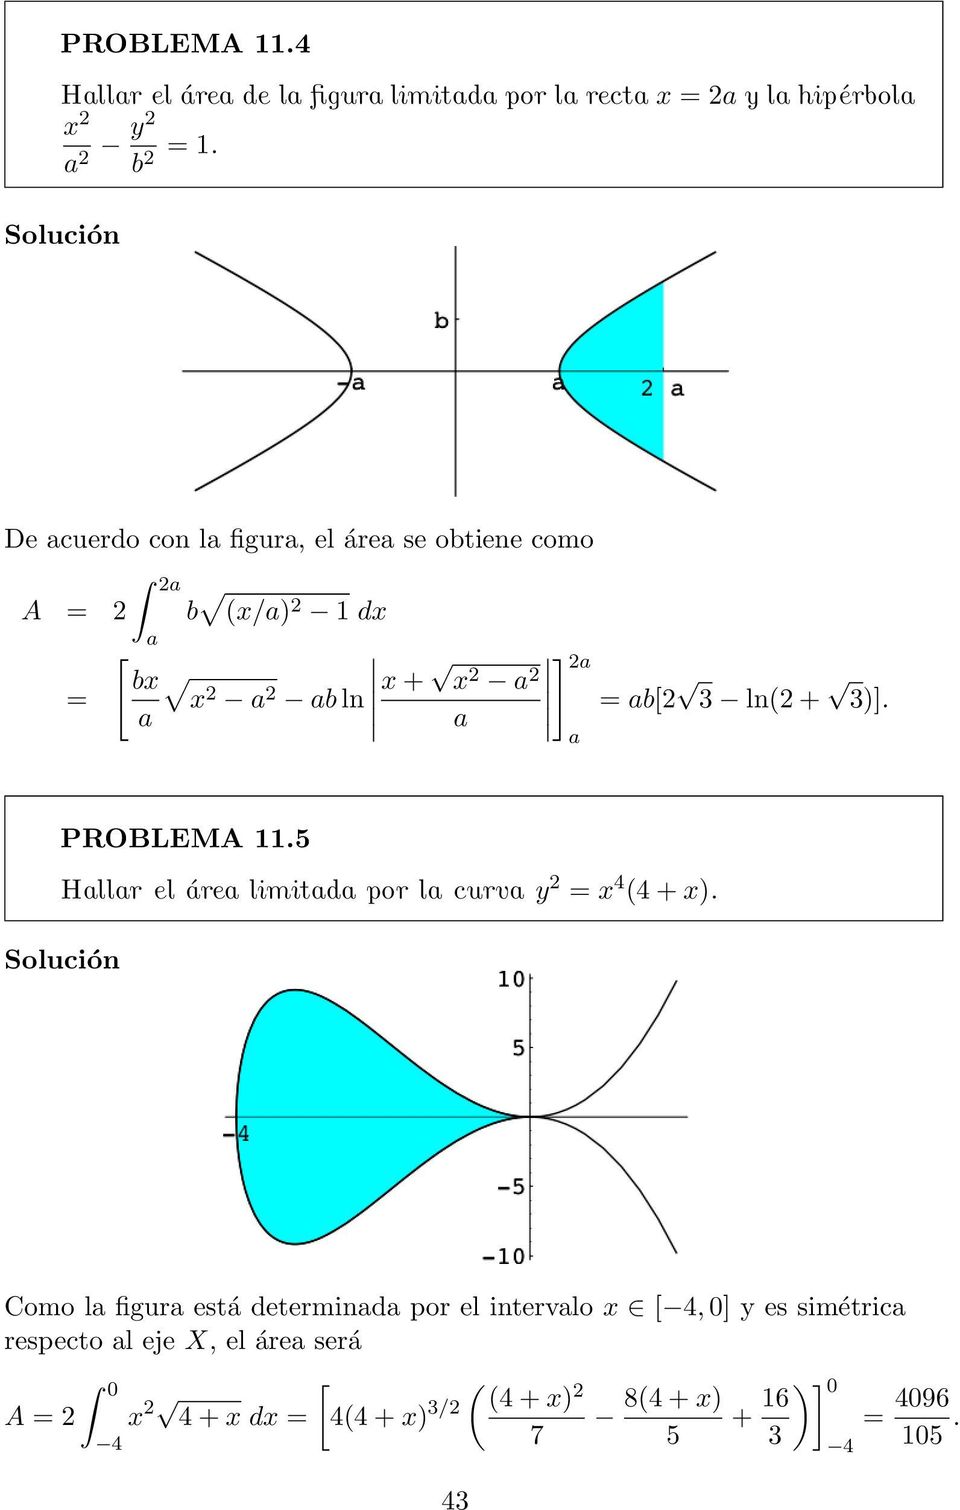 + 3)]. PROBLEMA 11.5 Hallar el área limitada por la curva y = x 4 (4 + x).